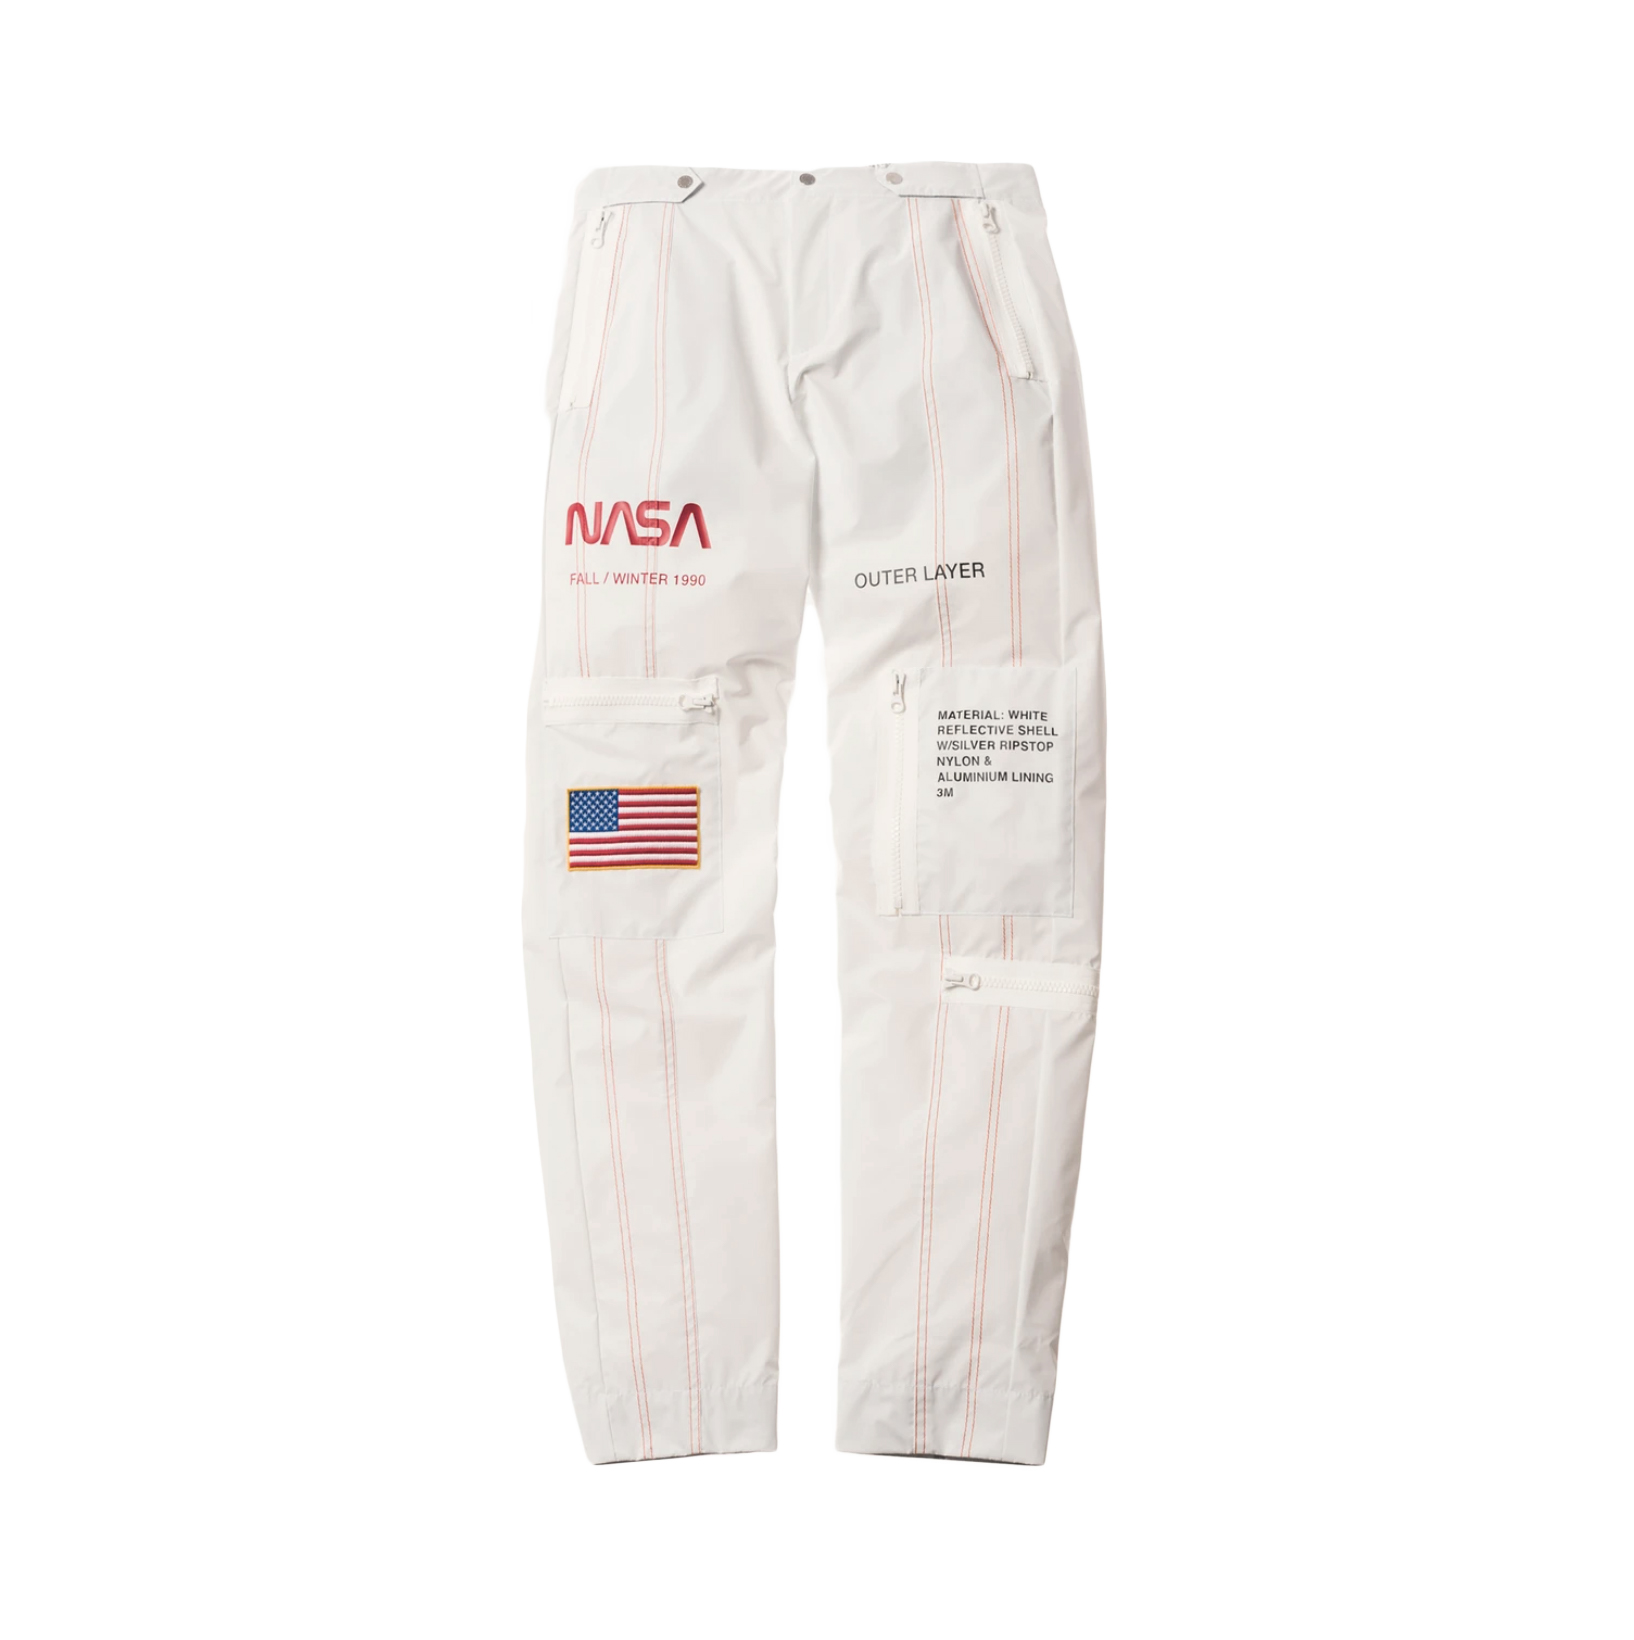 Heron Preston x NASA High Tech Pants White